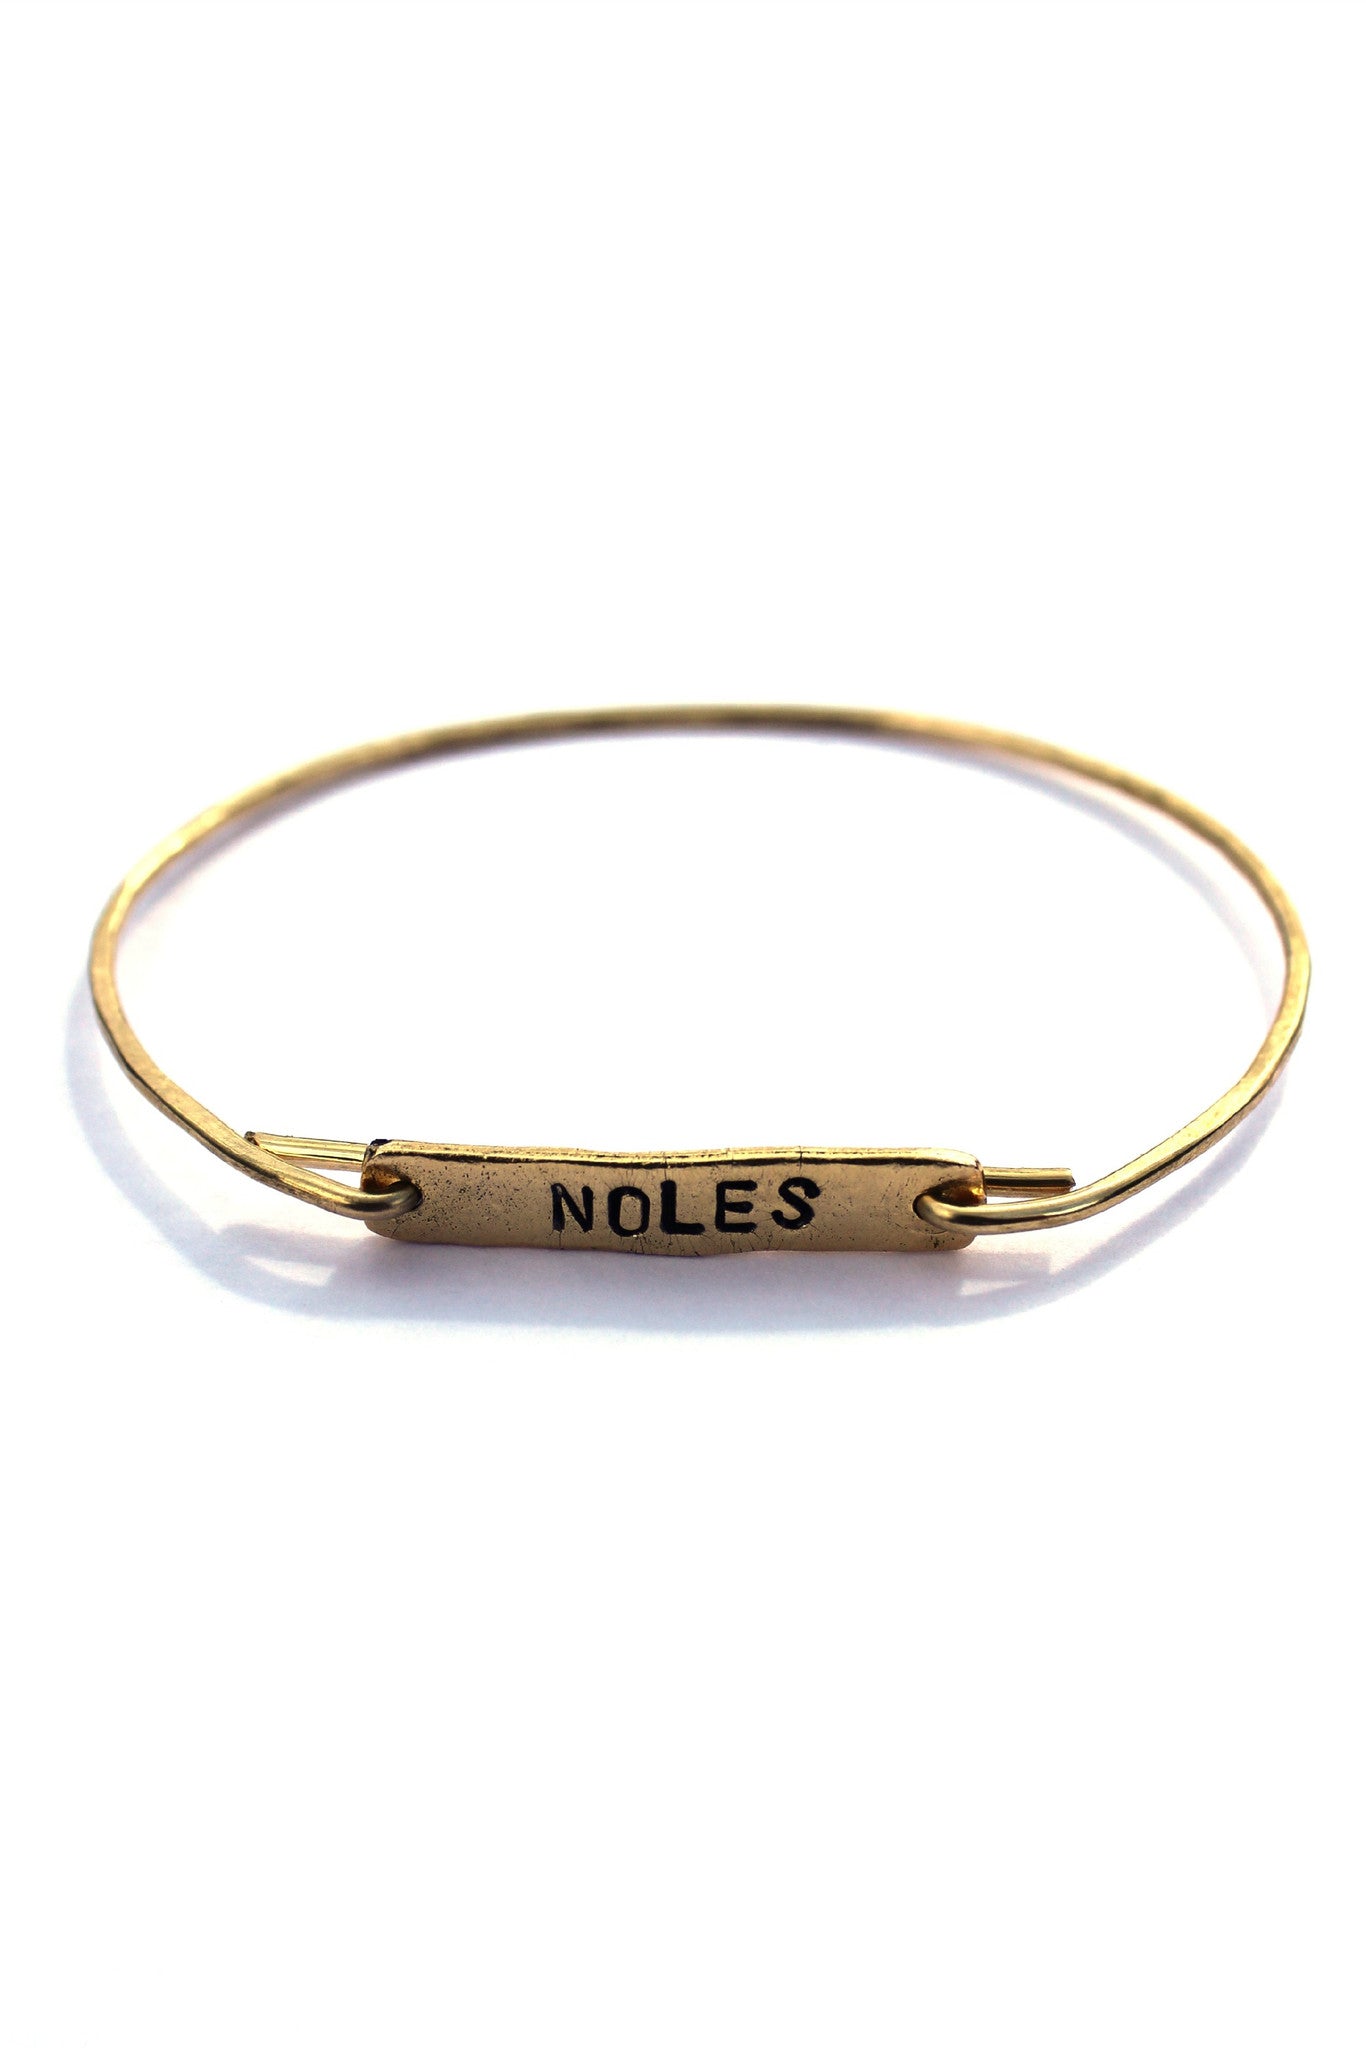 Julio: Noles Bracelet, Gold